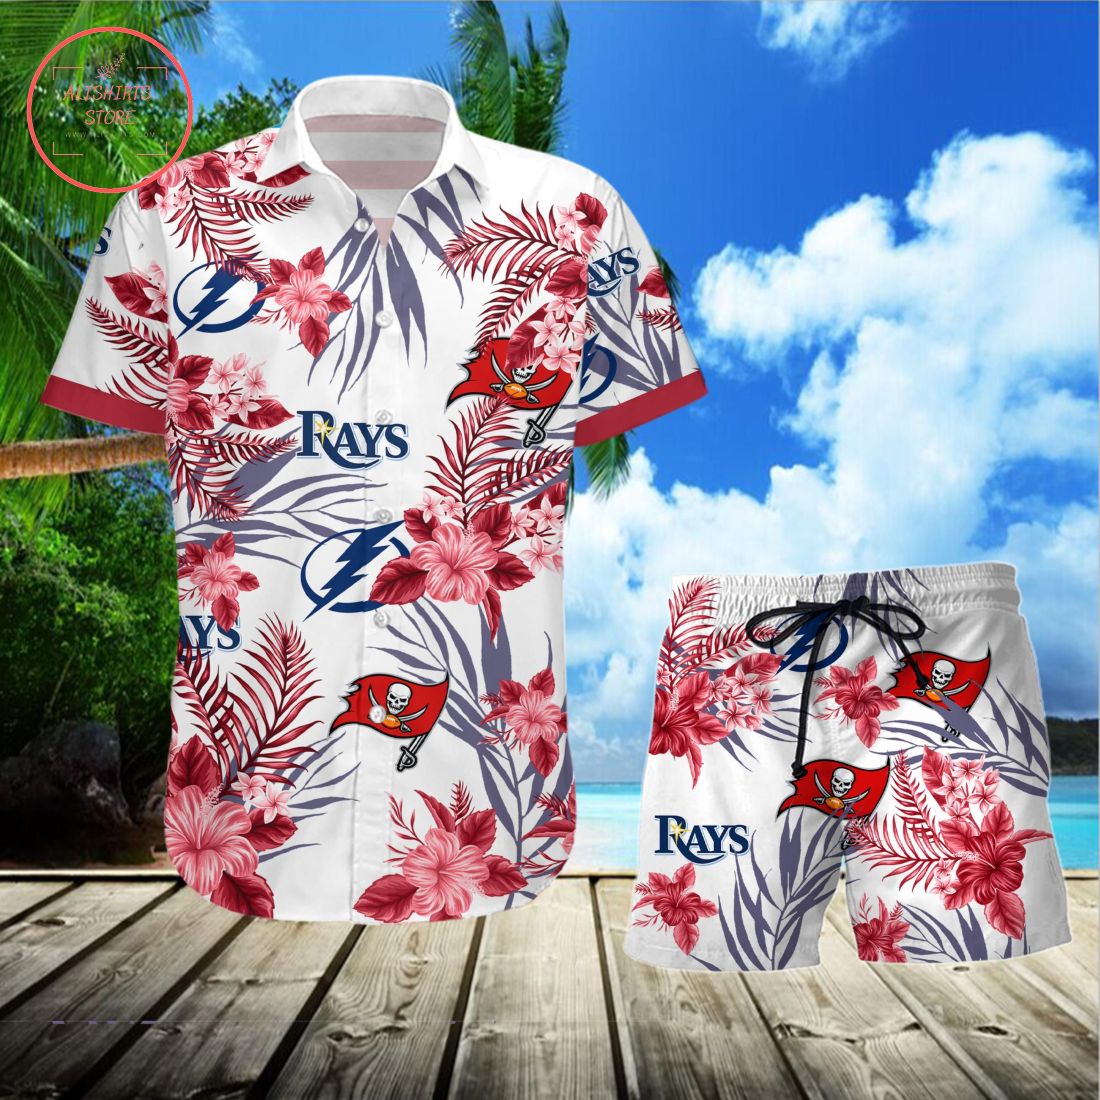 Tampa Bay Buccaneers Tampa Bay Lightning Tampa Bay Rays Hawaiian Shirt and Shorts